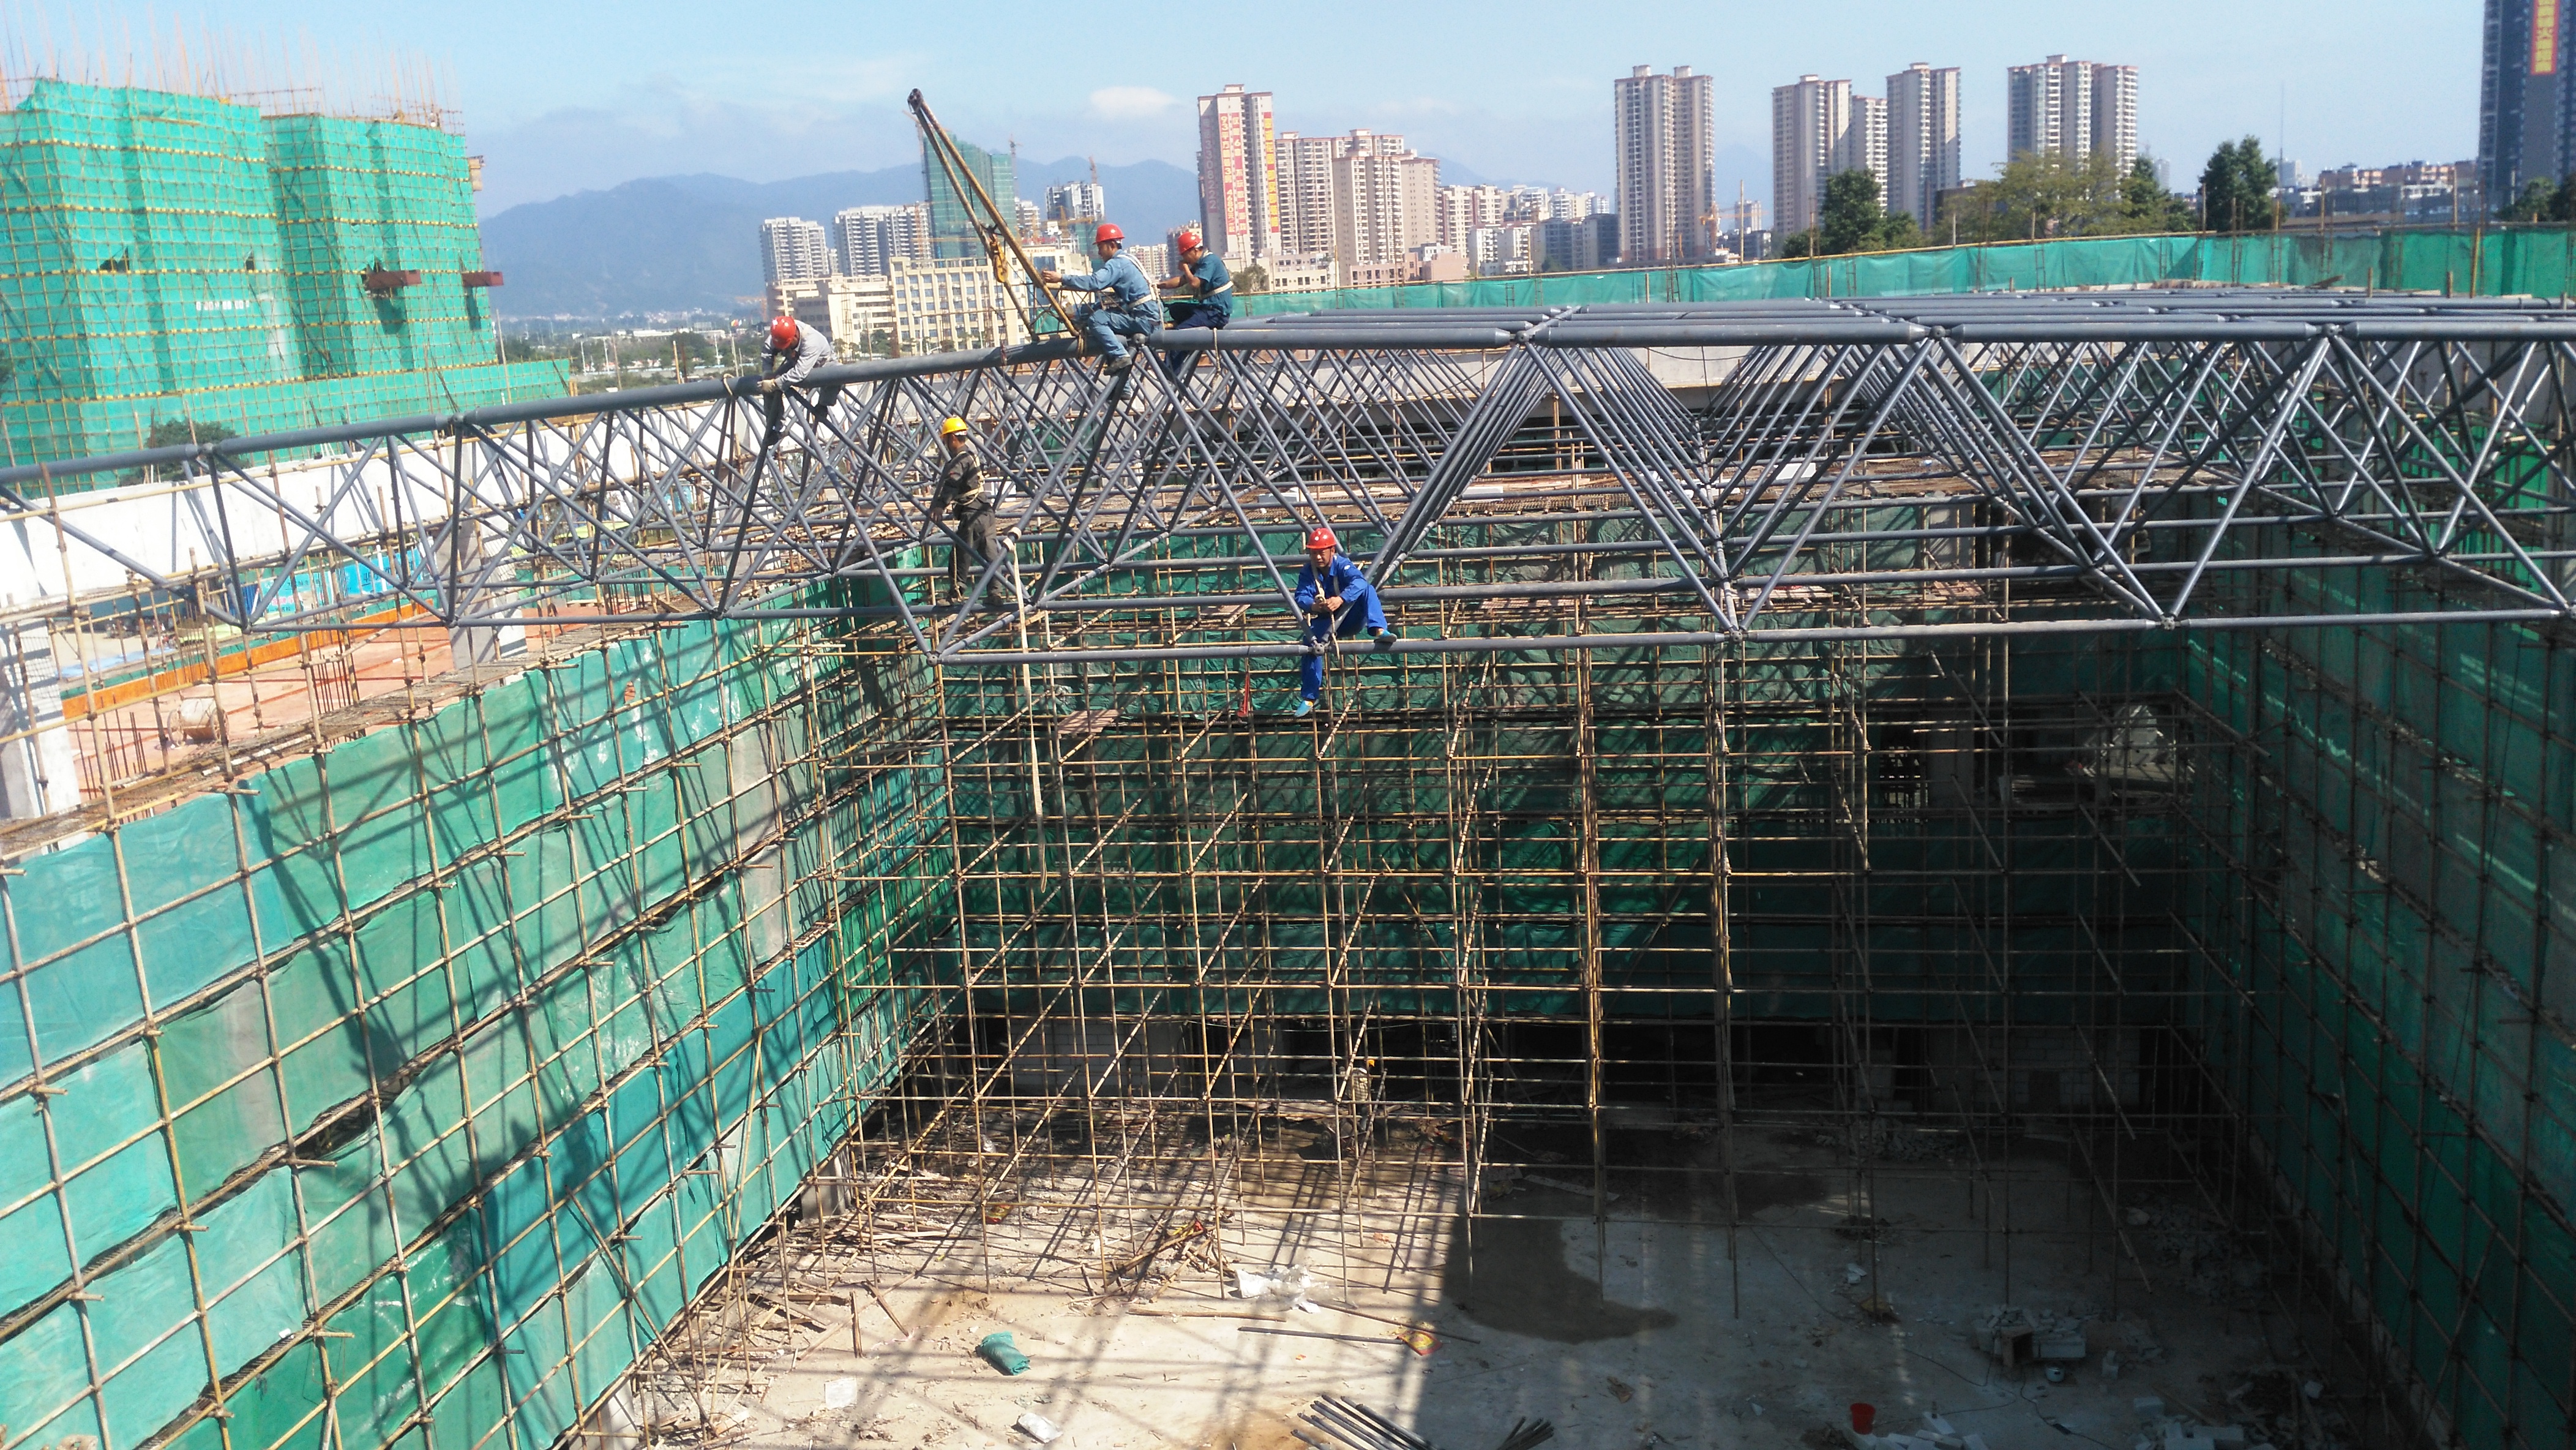 螺栓节点网架 球形玻璃顶钢网架工 深圳网架加工厂 玻璃钢网架工程